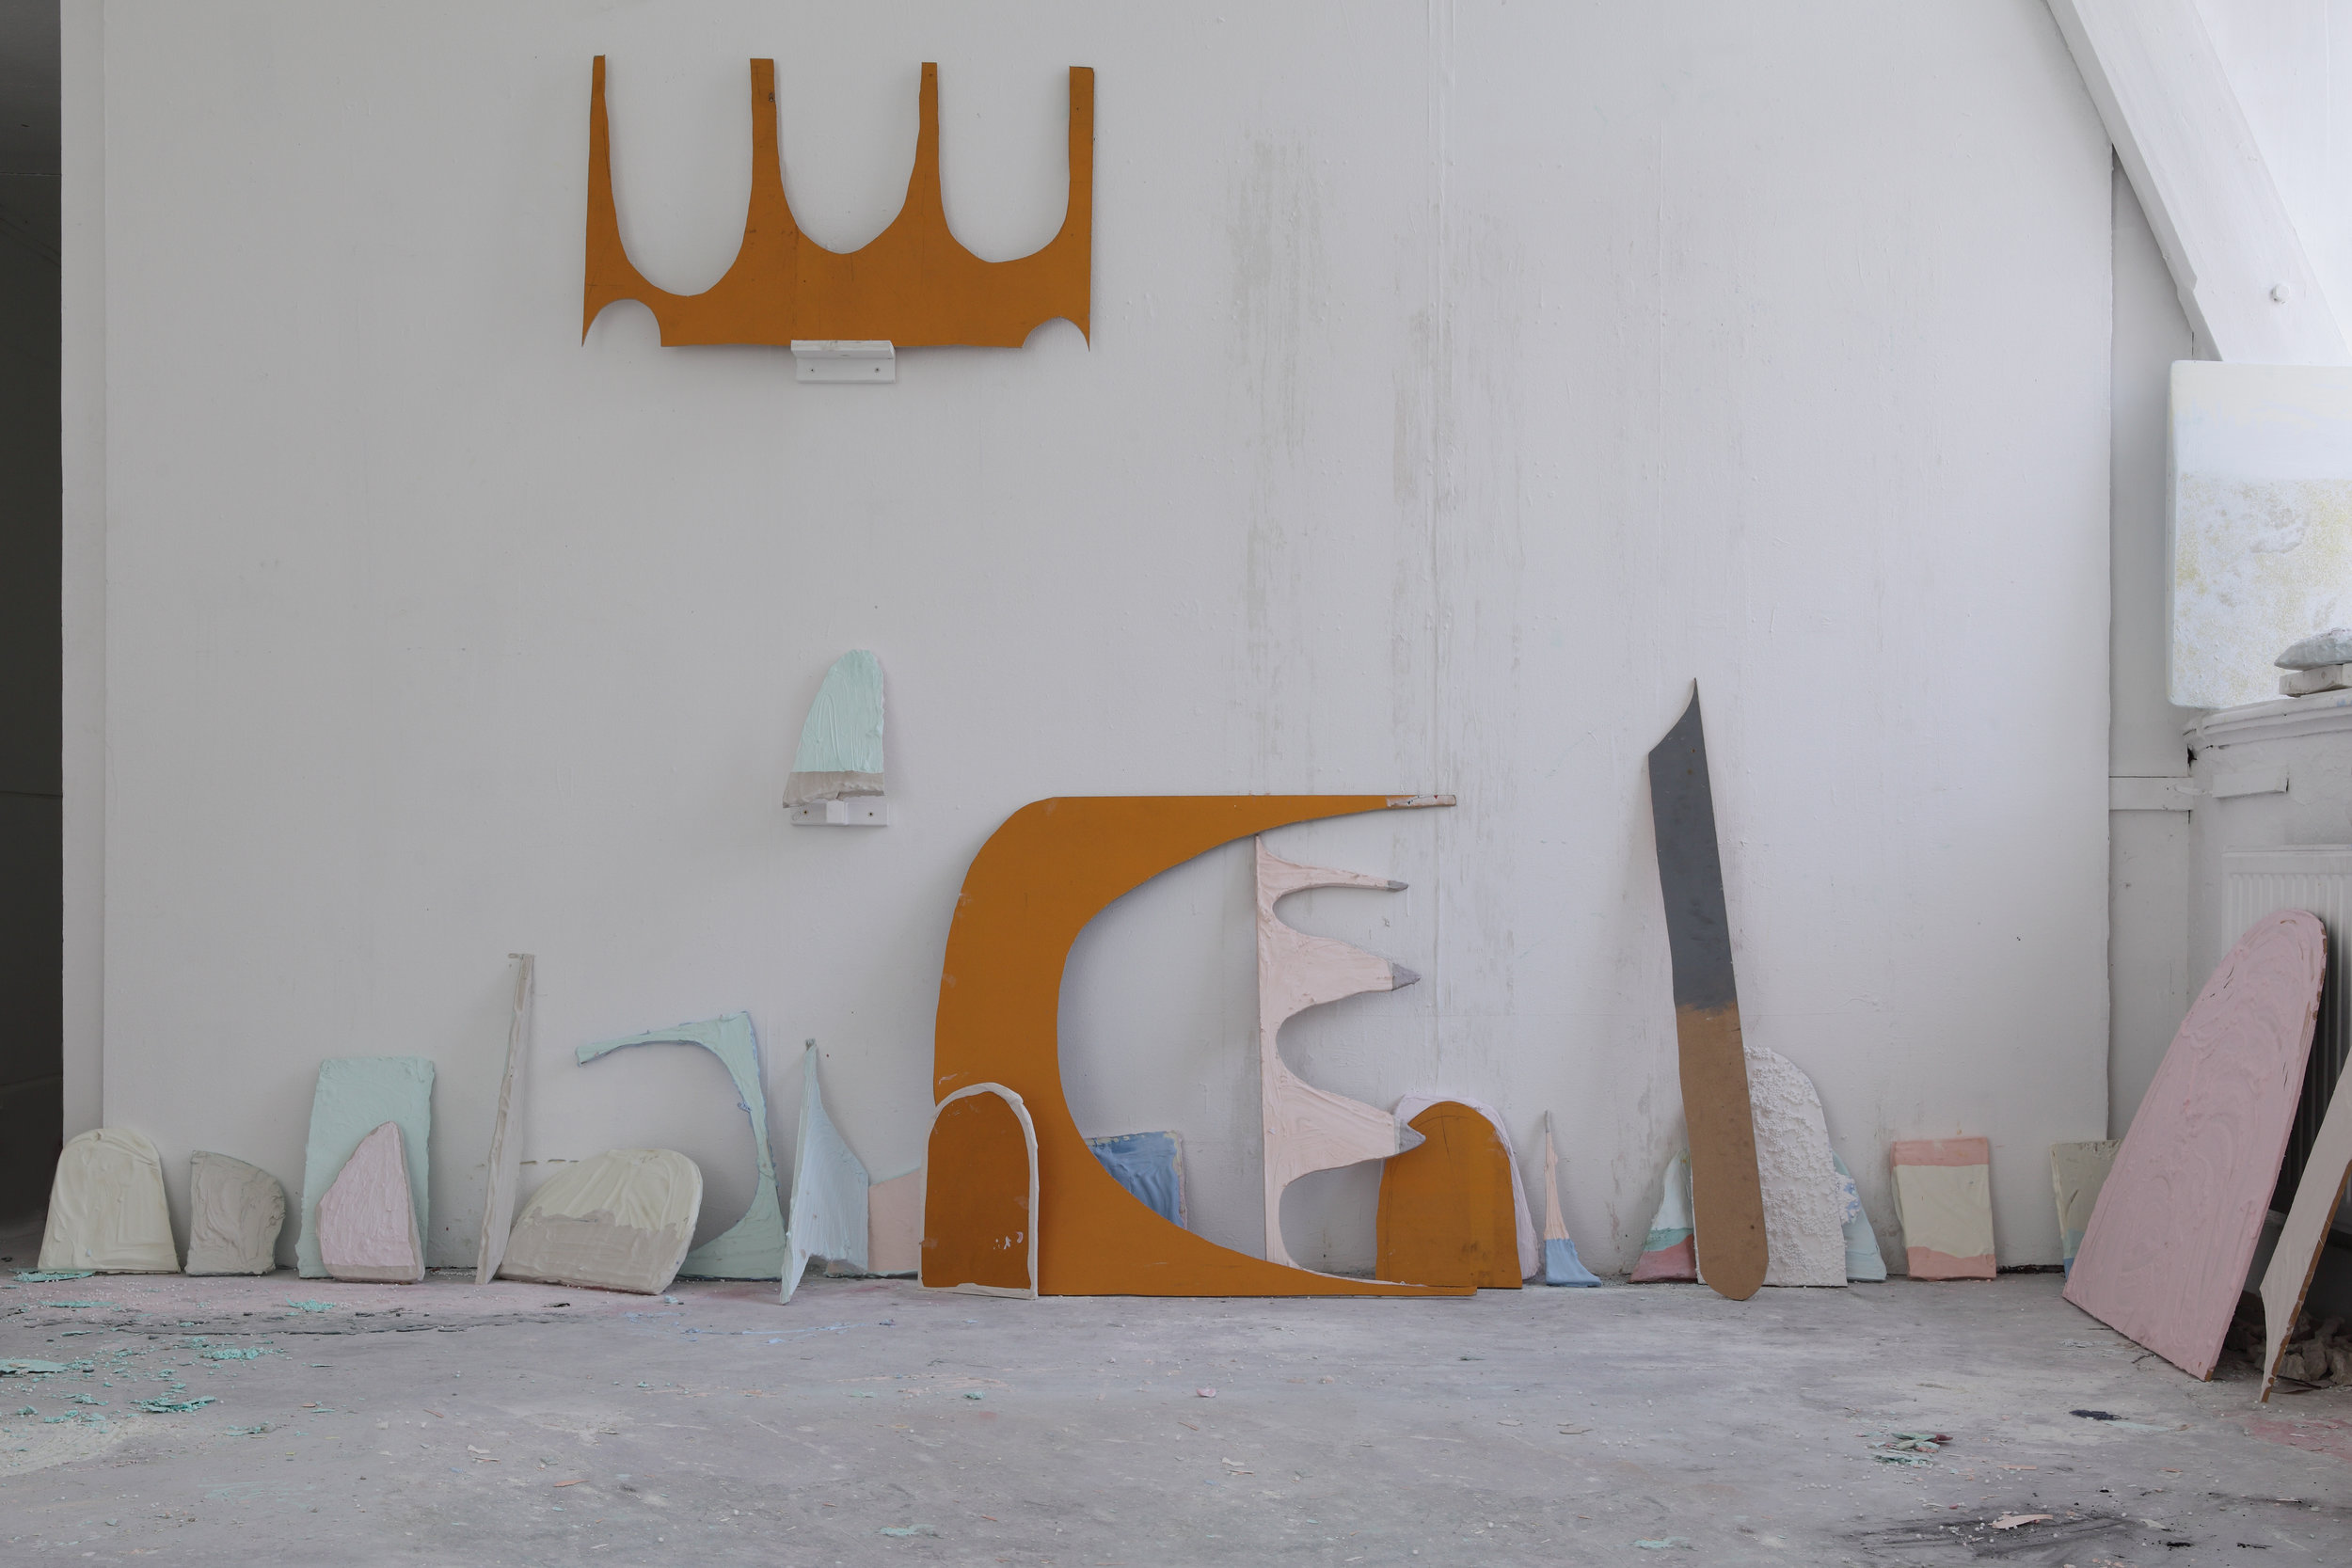 Studio View 2014 - Wood, plaster, pigments, 24 - 60 cm, Maastricht, 2014